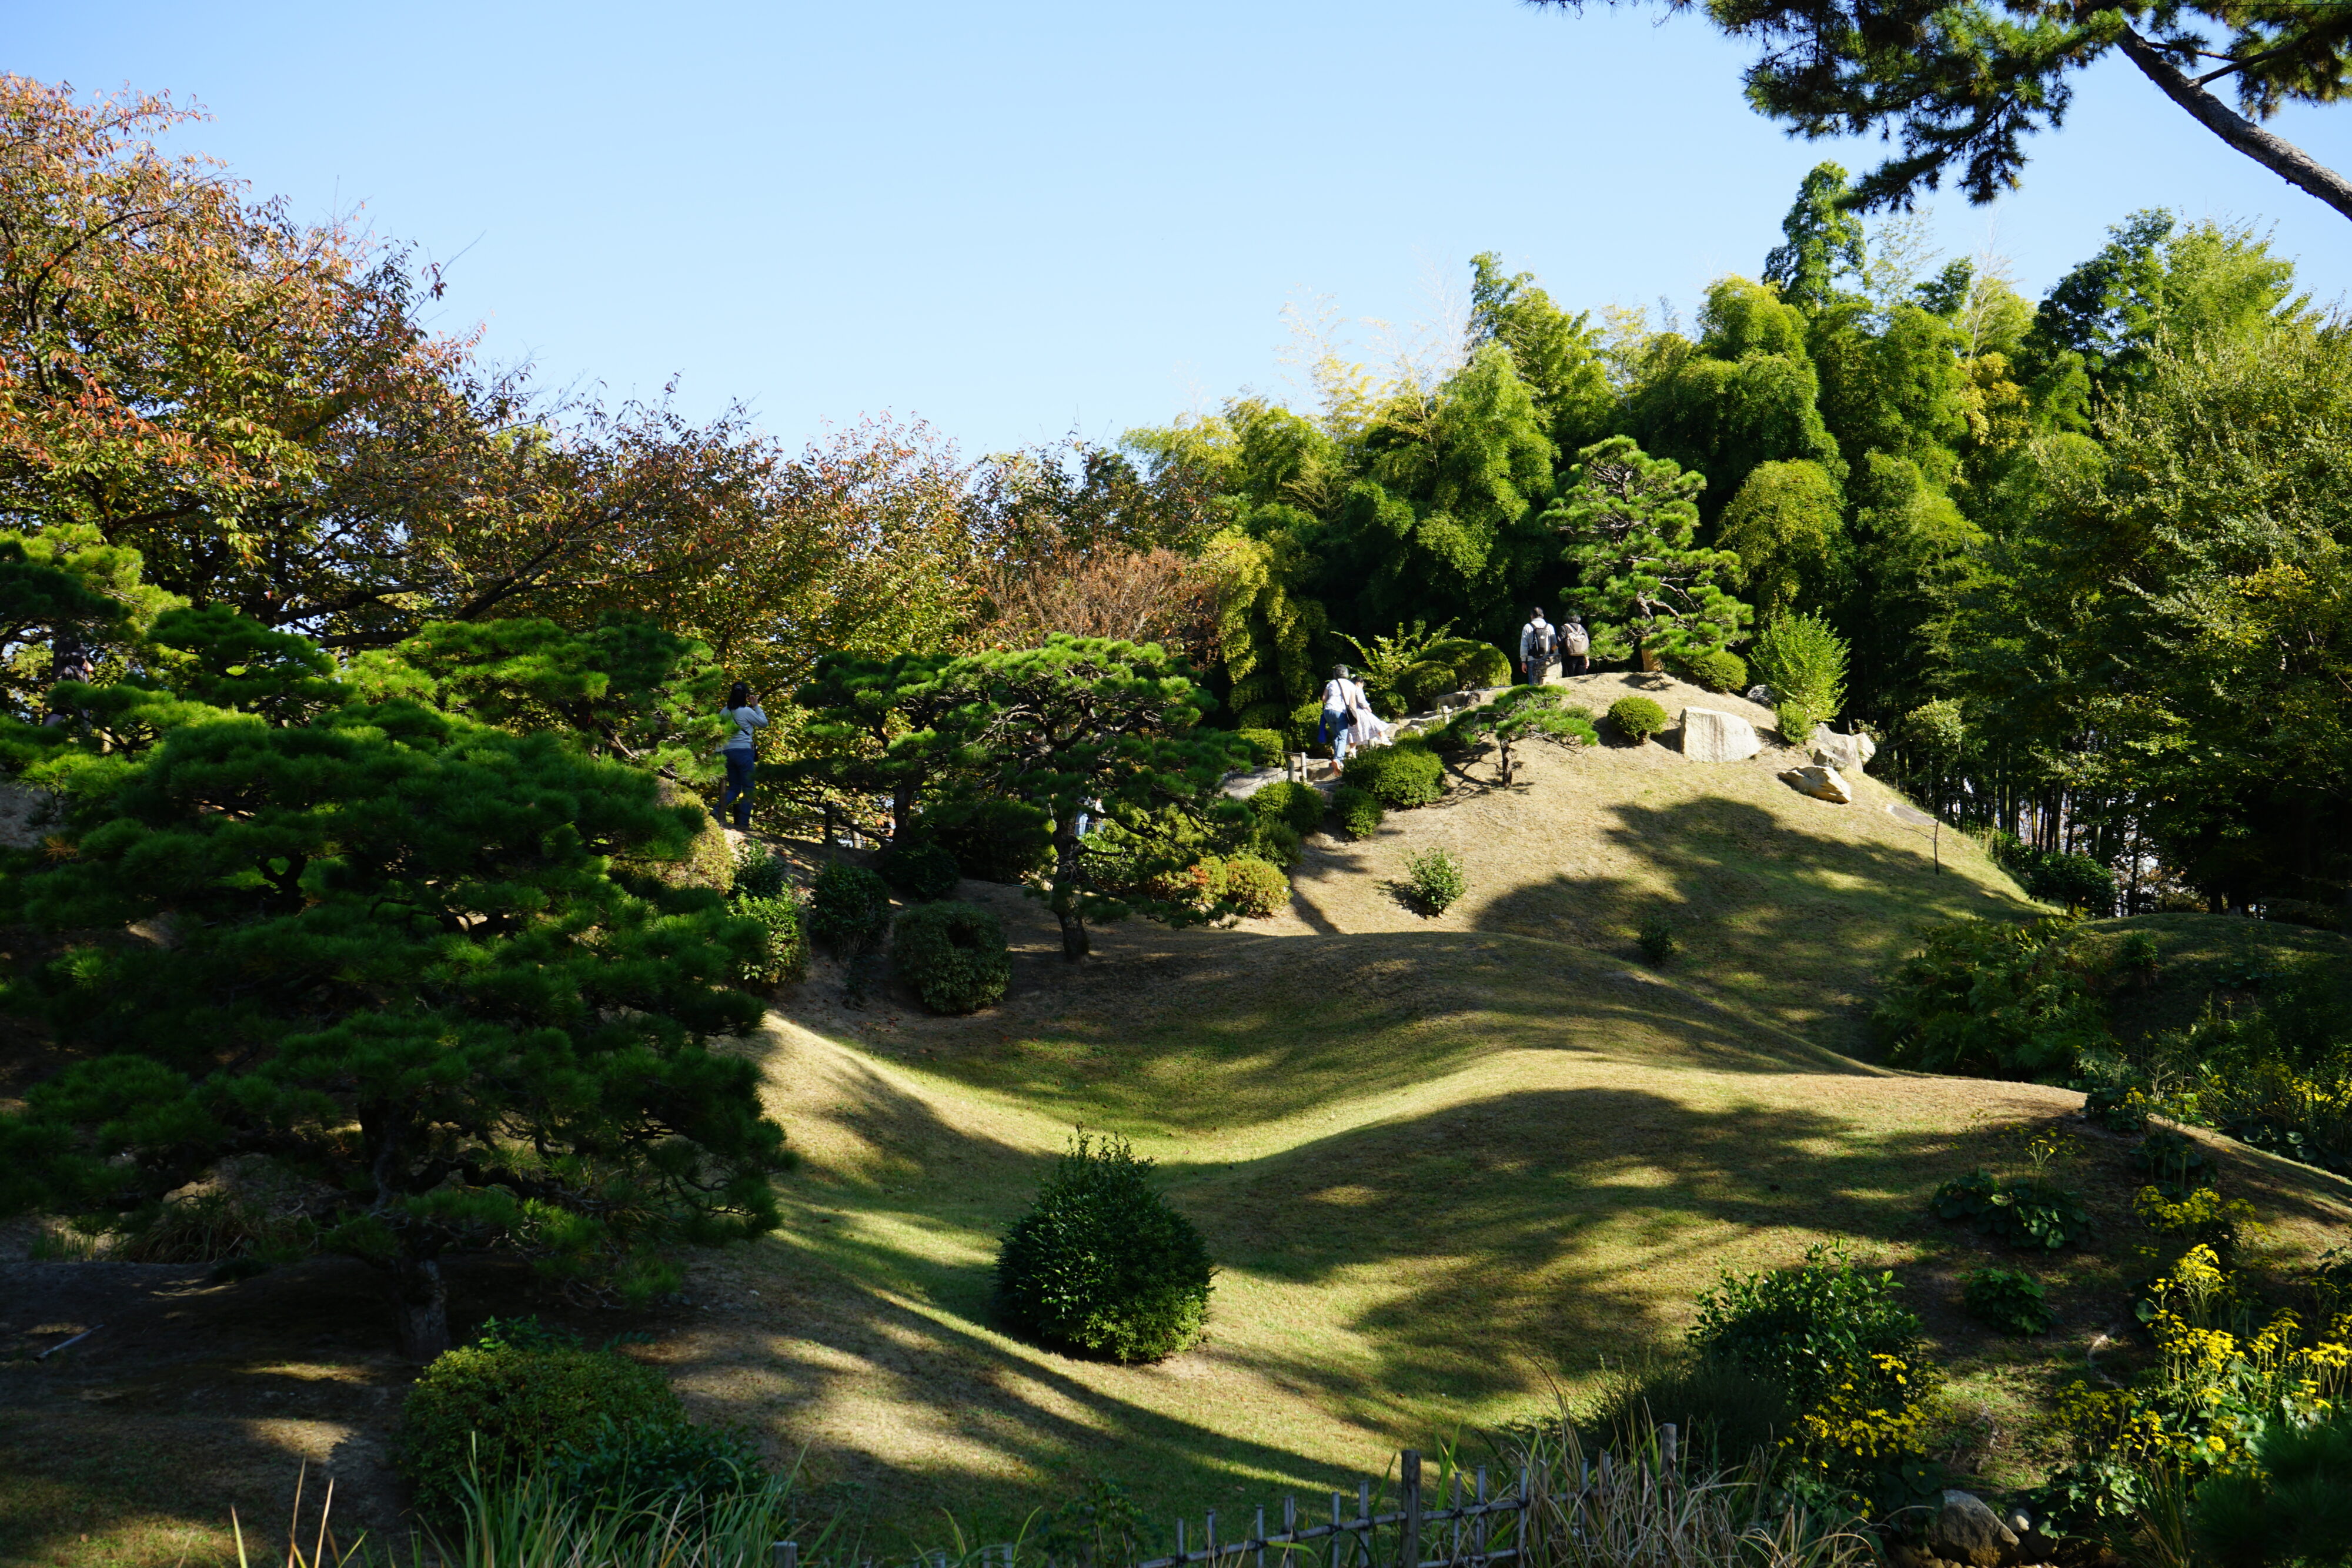 Hügeliger Garten mit kleinen runden Büschen und sattgrünen Bäumen.